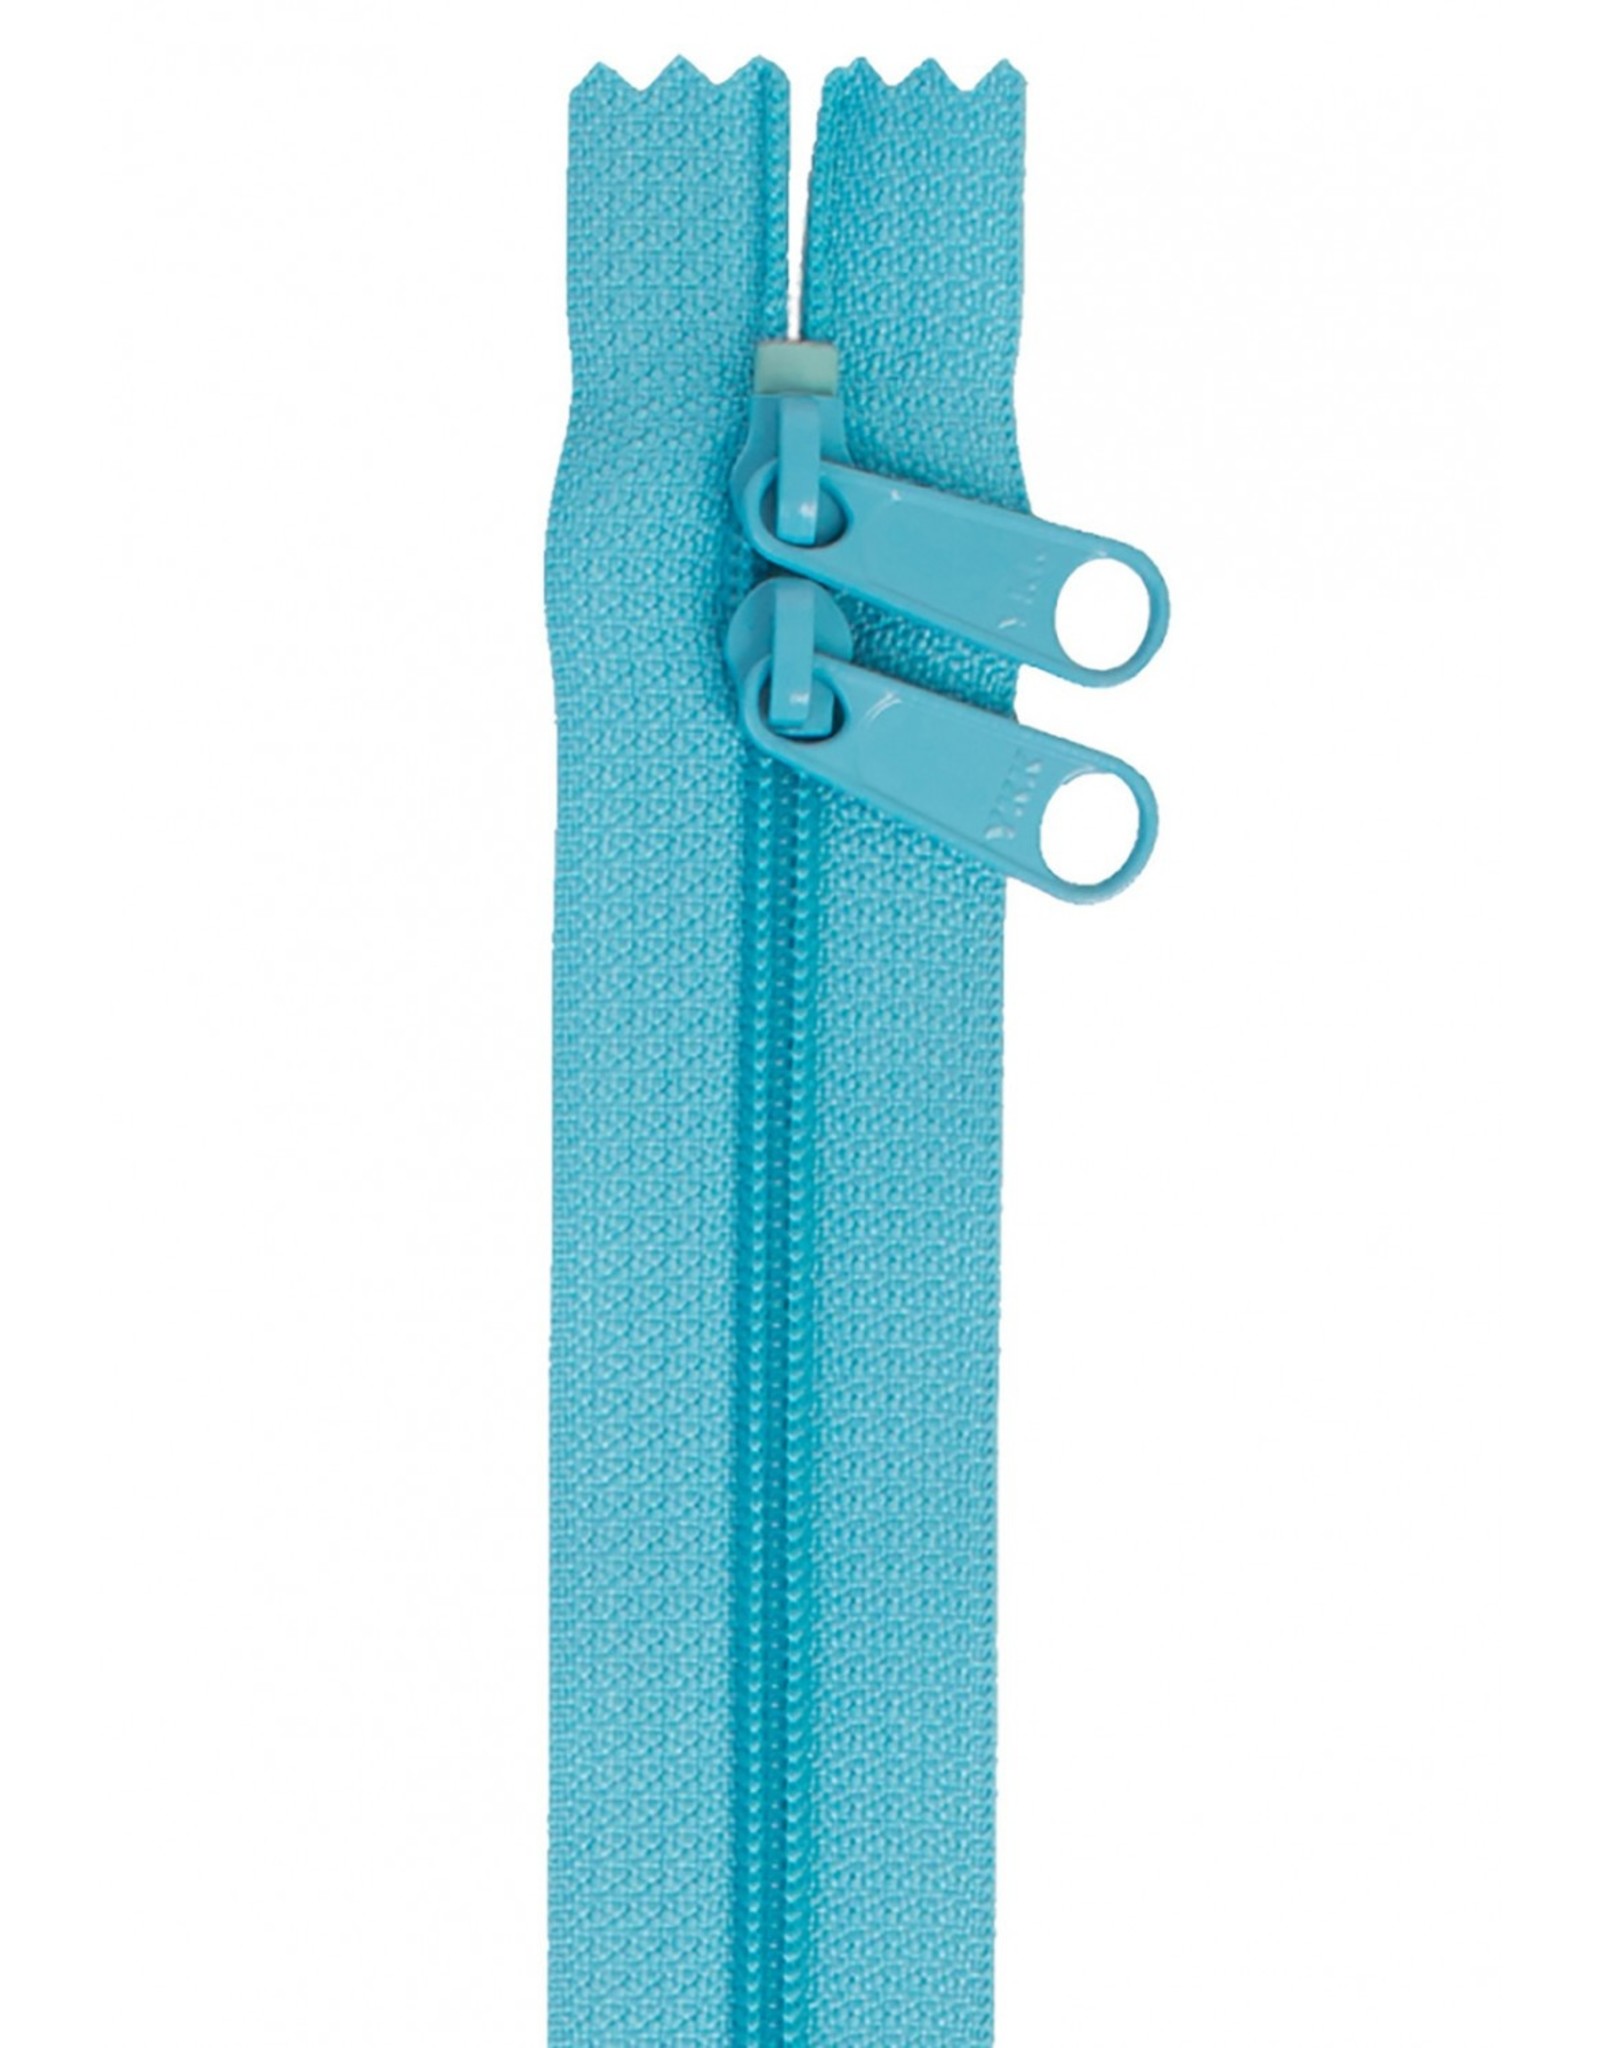 ByAnnie Handbag Zipper - 30 inch / 76 cm - double slide - Parrot Blue